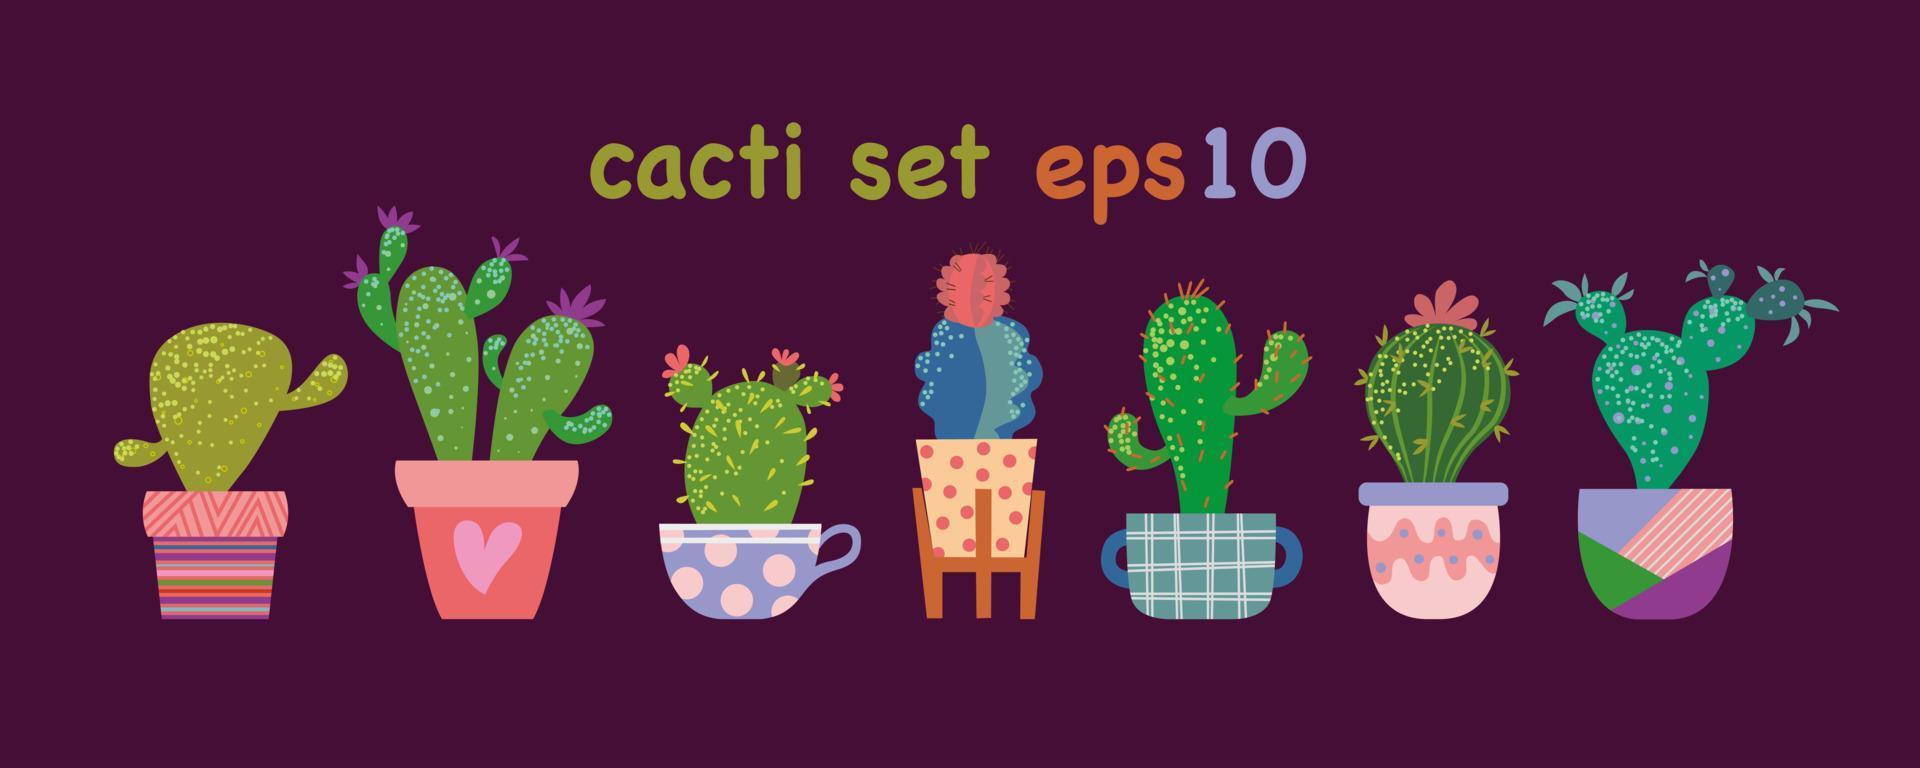 vektor uppsättning av olika kaktusar i blandad dekorativ blomkruka och krukor.